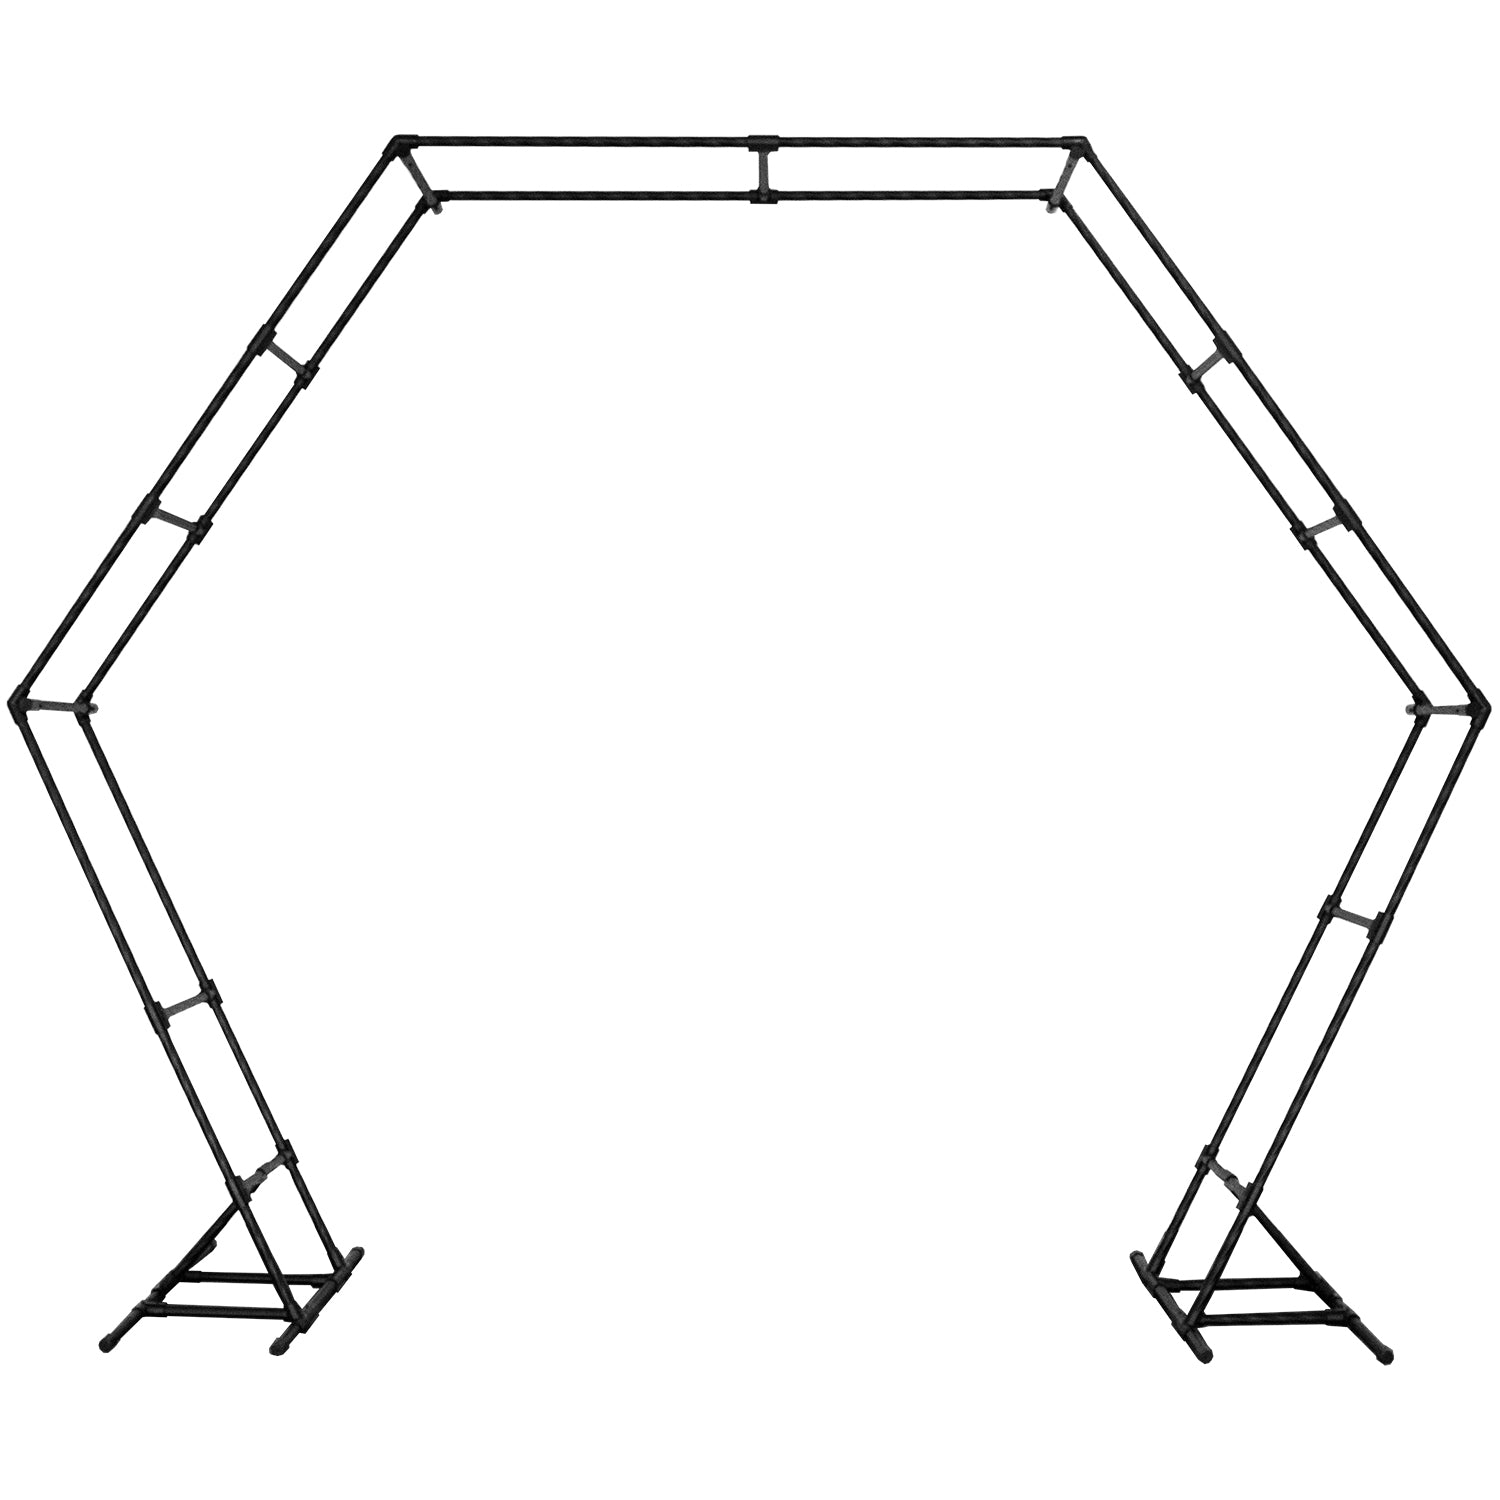 A sturdy Hexagon wedding arch frame